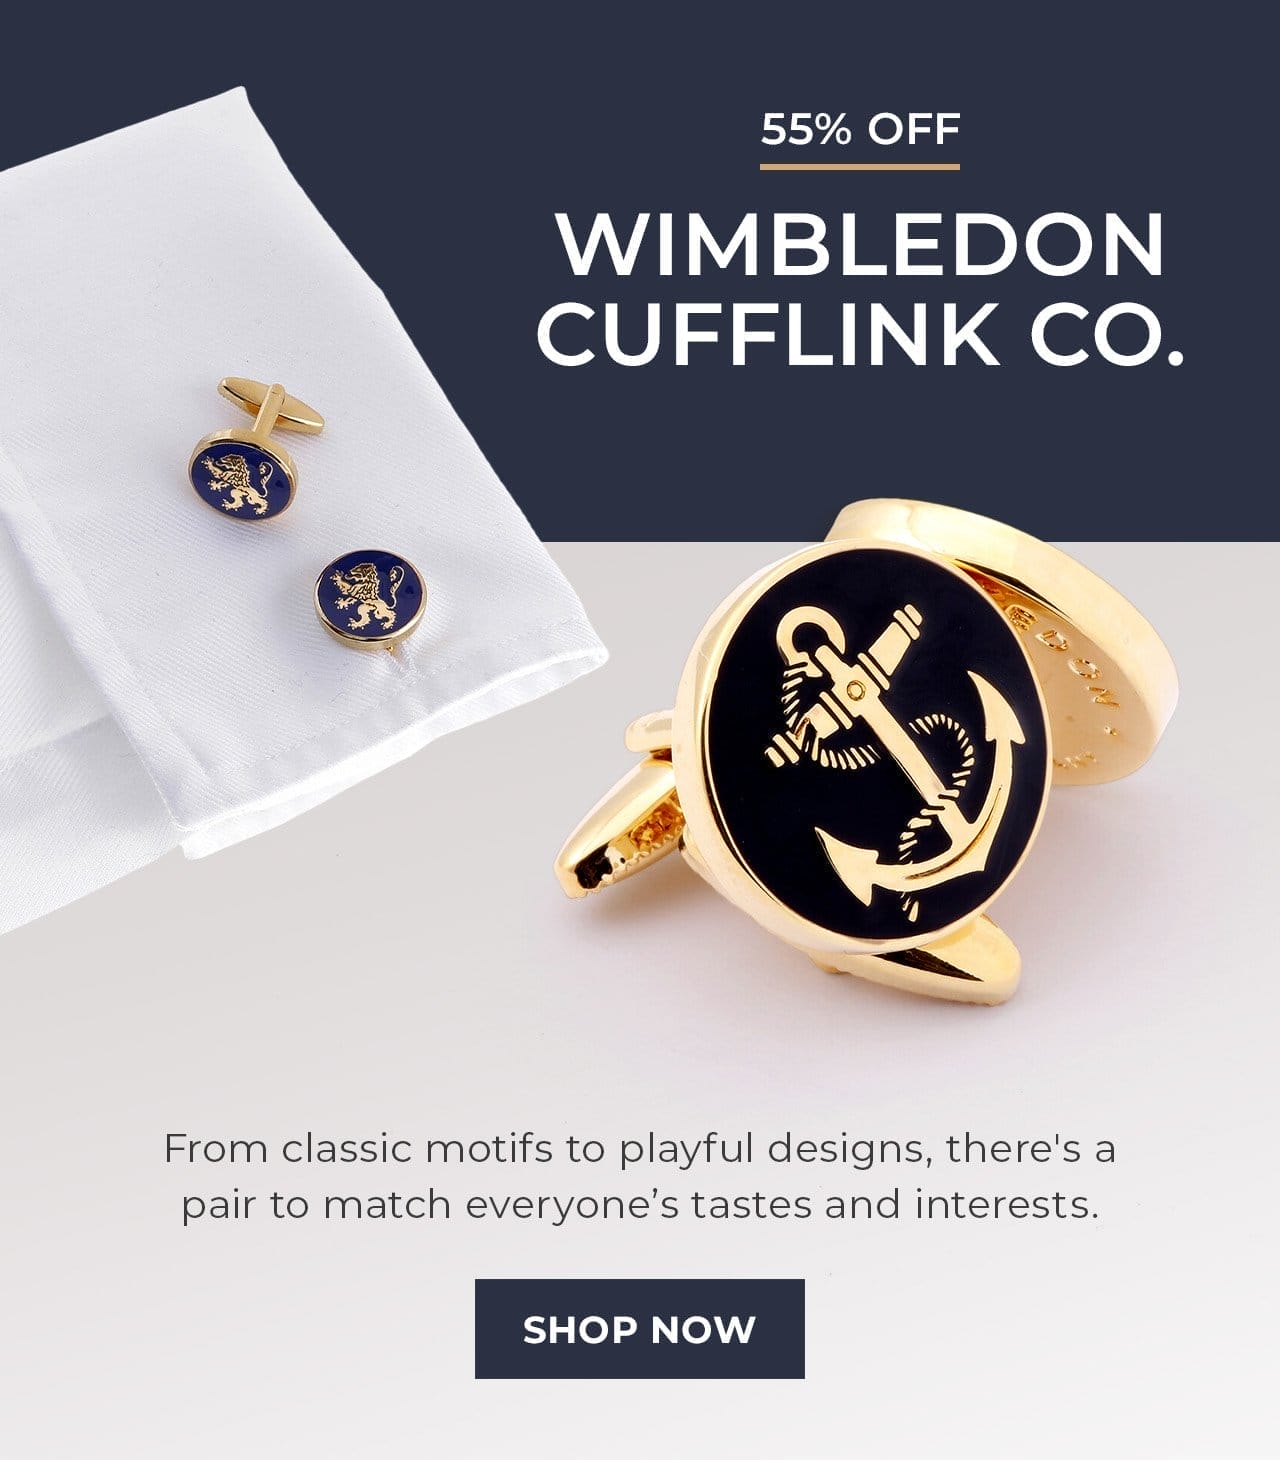 Wimbledon Cufflink Co. | SHOP NOW